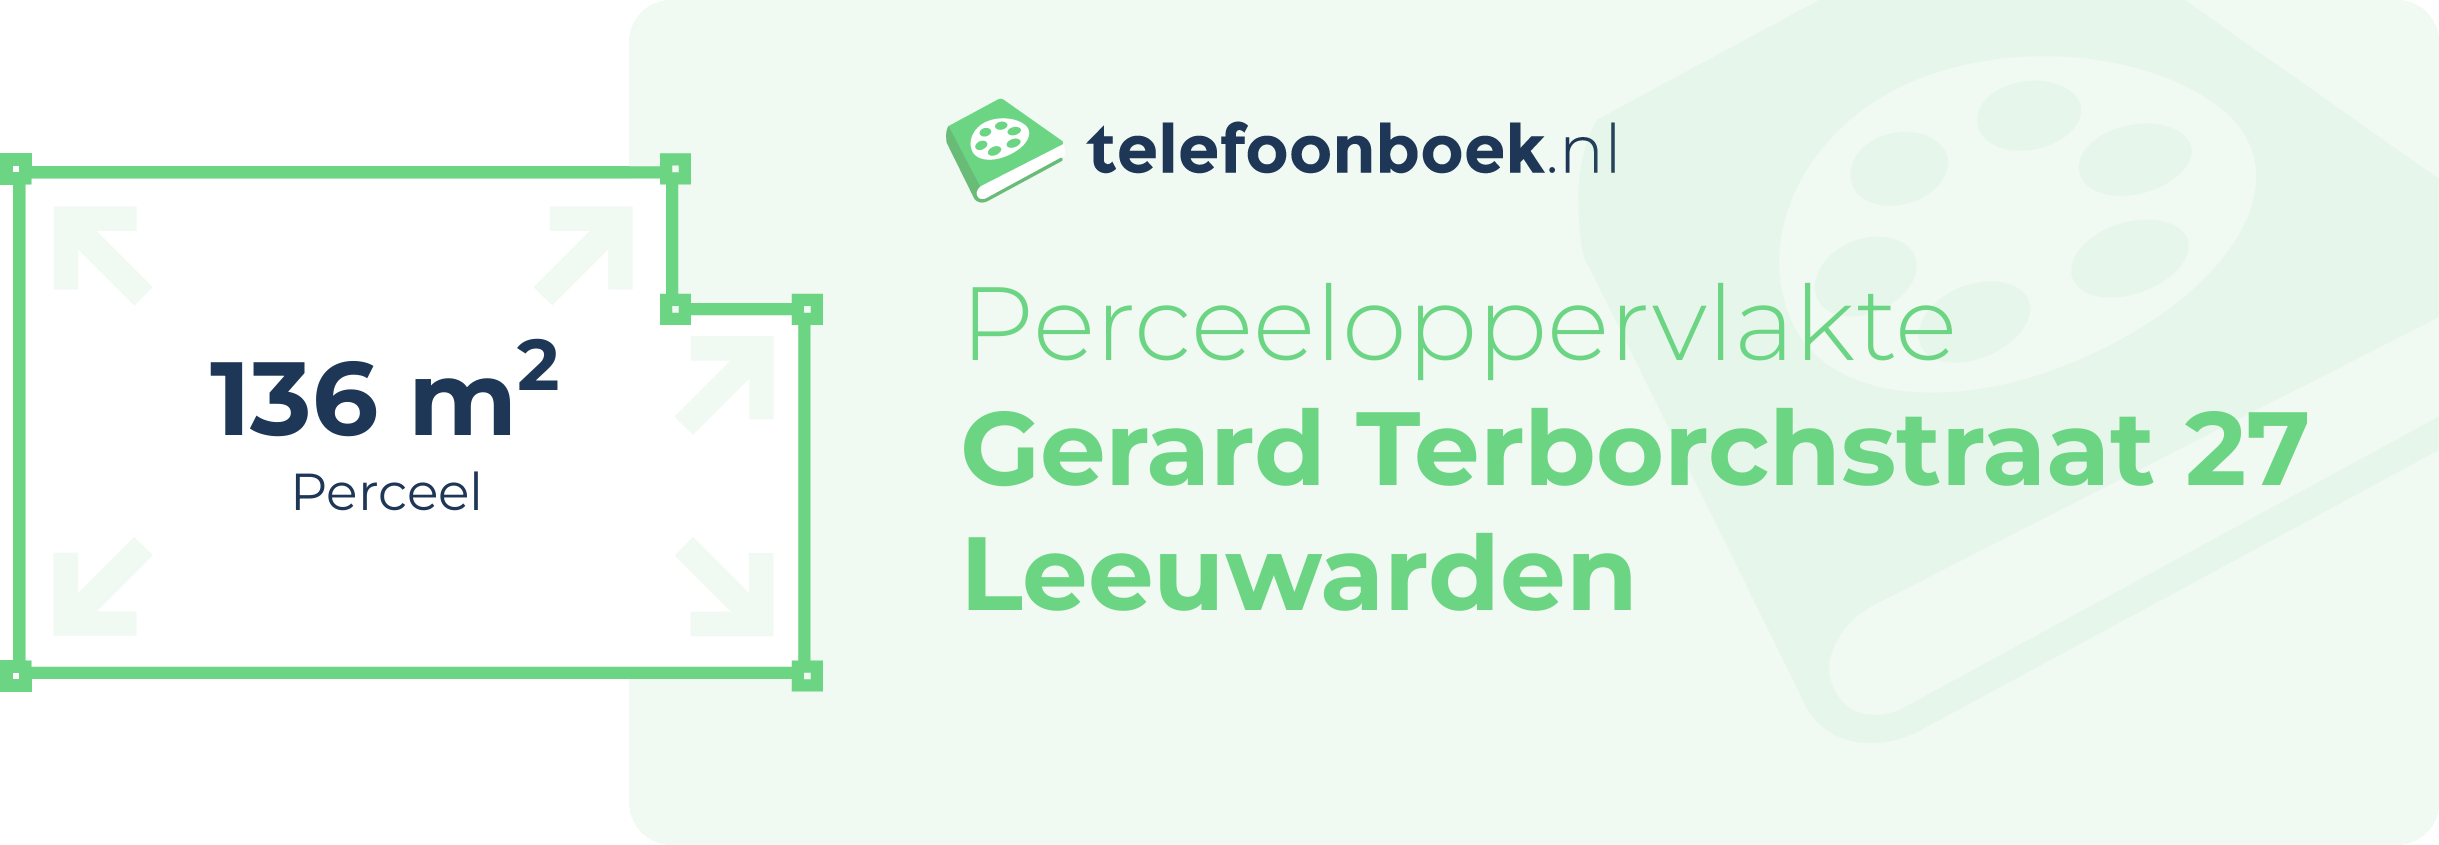 Perceeloppervlakte Gerard Terborchstraat 27 Leeuwarden